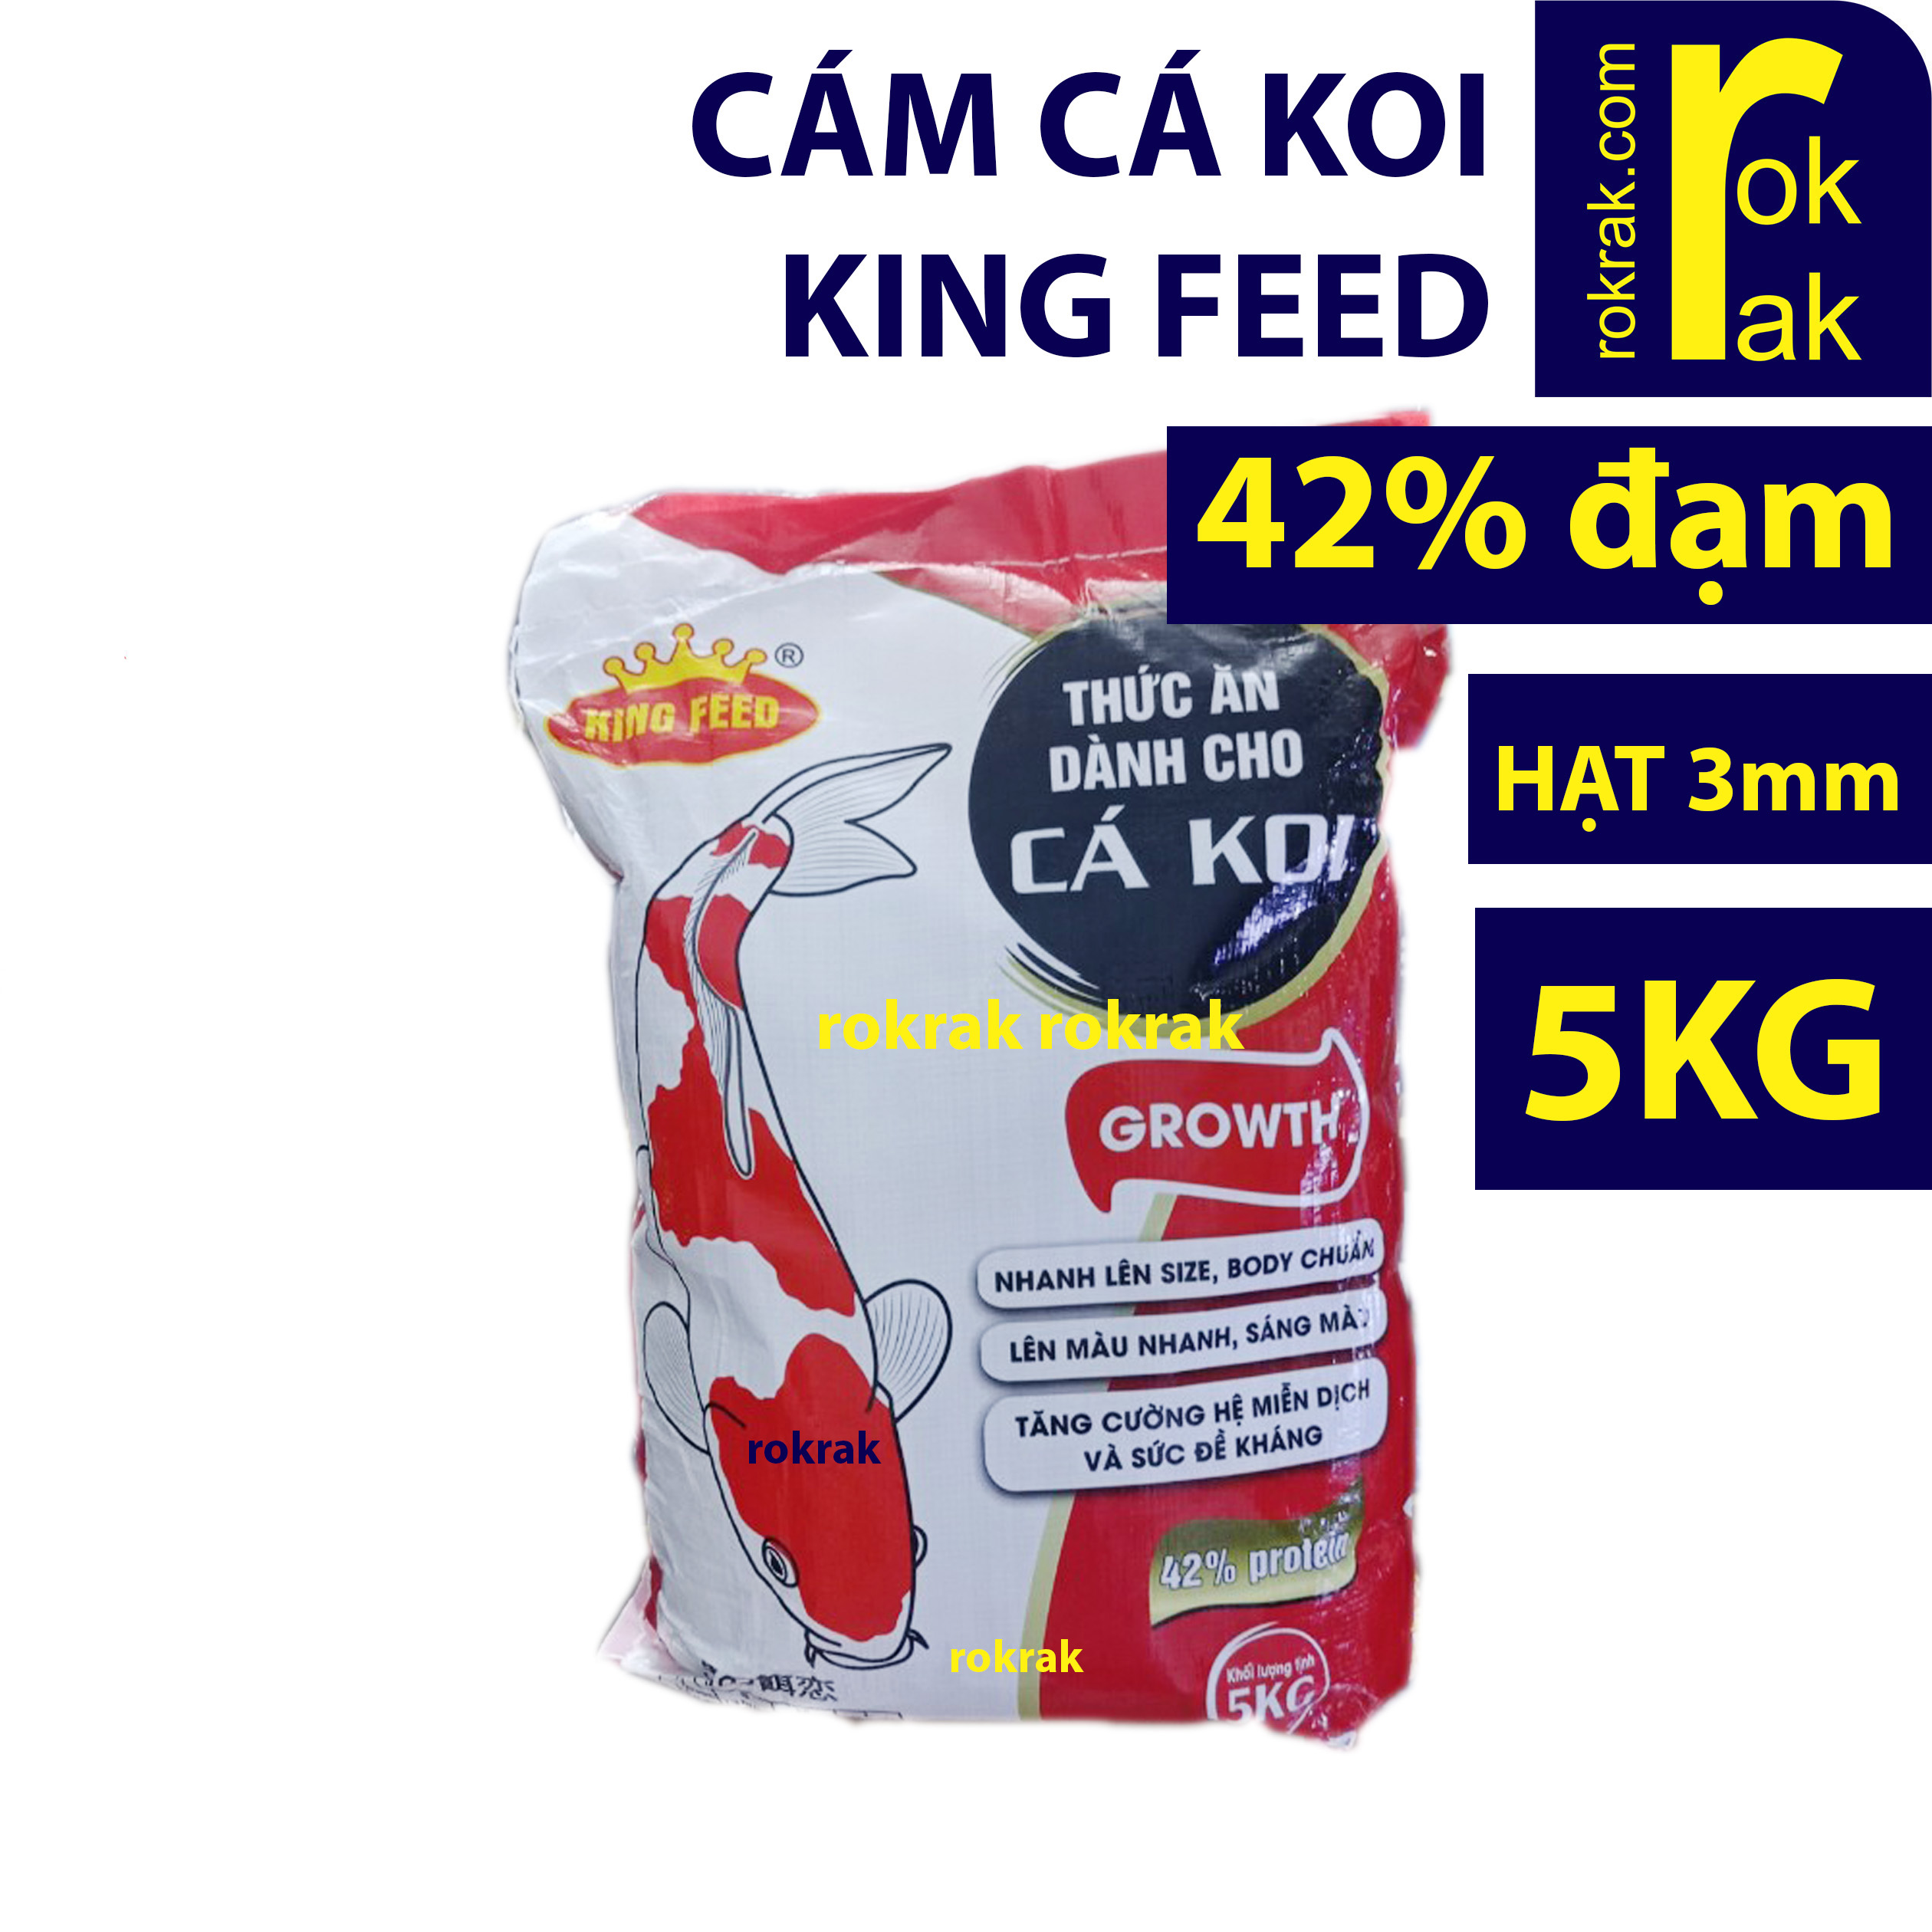 Cám cá koi king feed Thức ăn cá KOI 42% đạm GROW 5KG size hạt